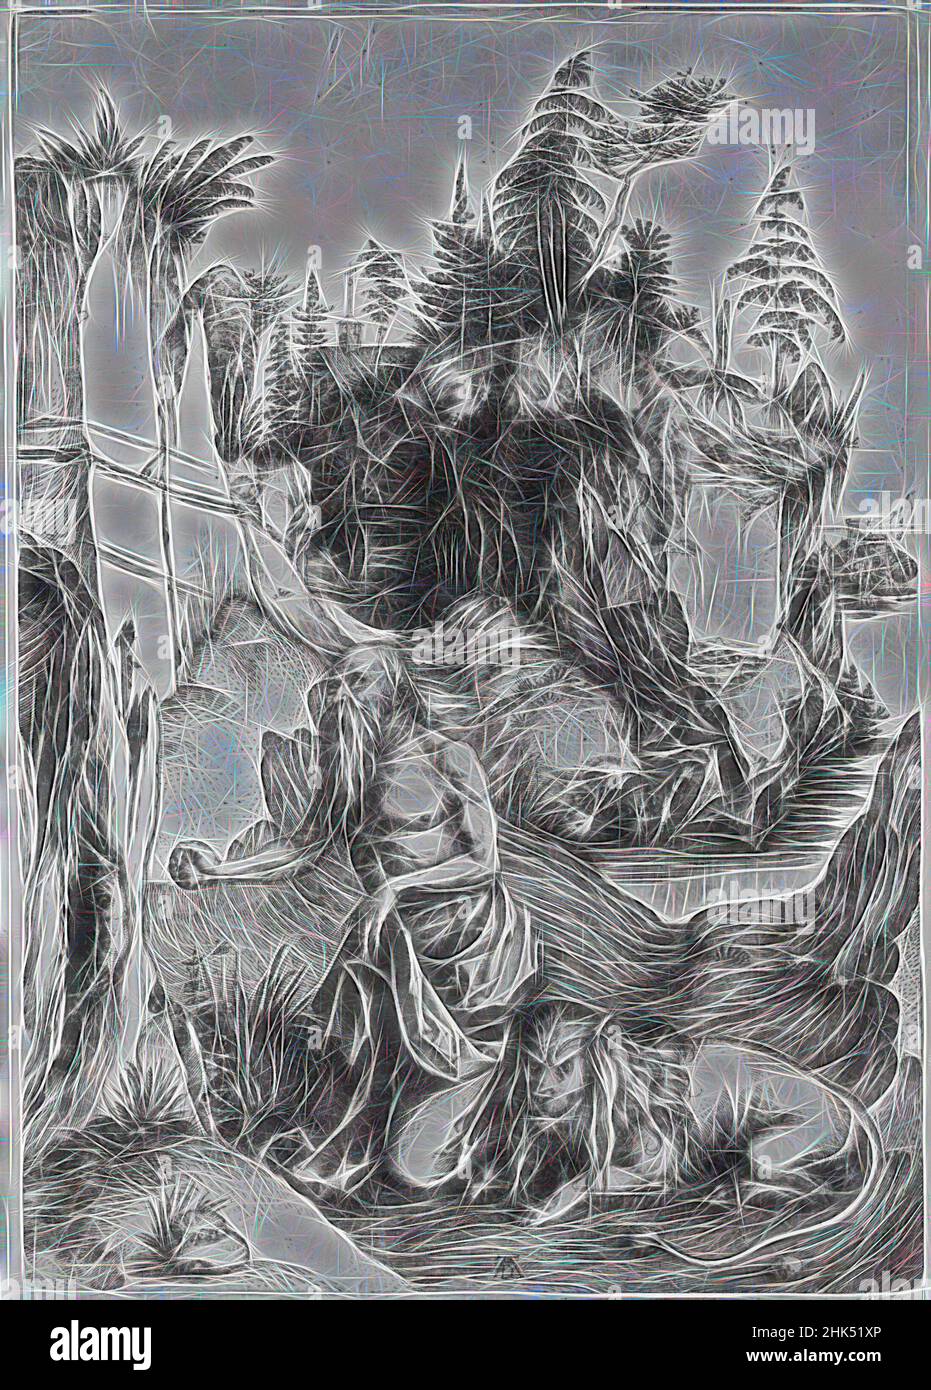 Inspiré par Saint-Jérôme dans le désert, Albrecht Dürer, allemand, 1471-1528, gravure sur papier cousu, 1495-1497, feuille: 12 3/8 x 8 7/8 po, 31,4 x 22,5 cm, réimaginé par Artotop. L'art classique réinventé avec une touche moderne. Conception de lumière chaleureuse et gaie, de luminosité et de rayonnement de lumière. La photographie s'inspire du surréalisme et du futurisme, embrassant l'énergie dynamique de la technologie moderne, du mouvement, de la vitesse et révolutionne la culture Banque D'Images